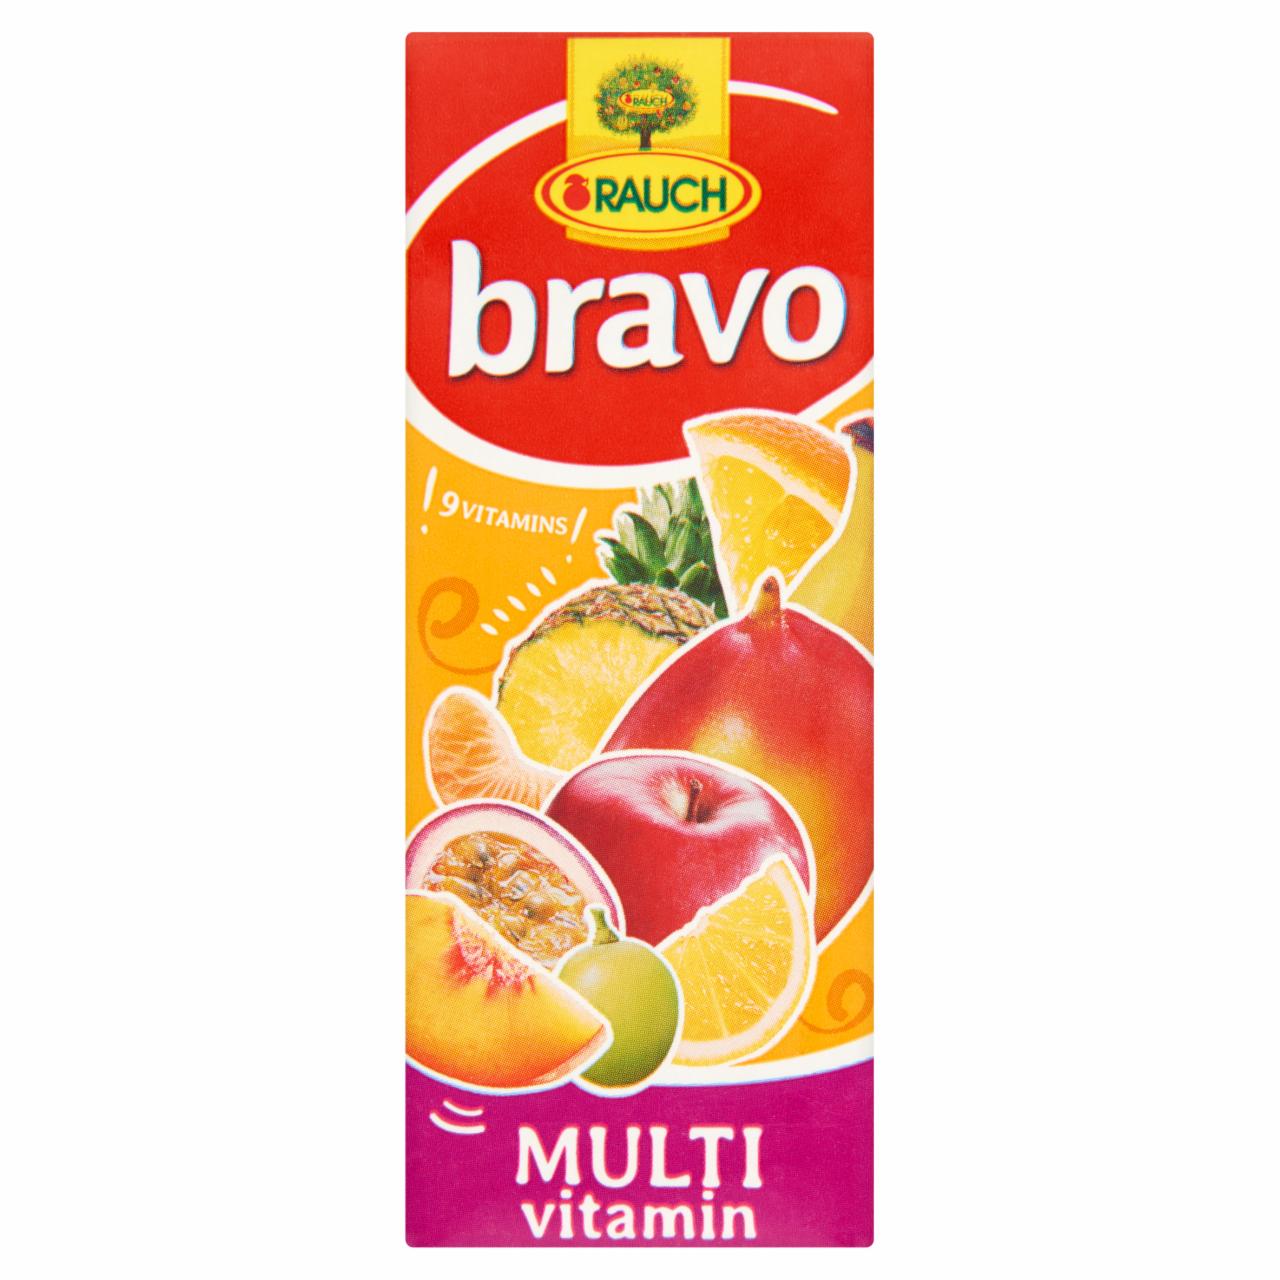 Képek - Rauch Bravo Multivitamin vegyes gyümölcsital édesítőszerekkel és 9 vitaminnal 0,2 l